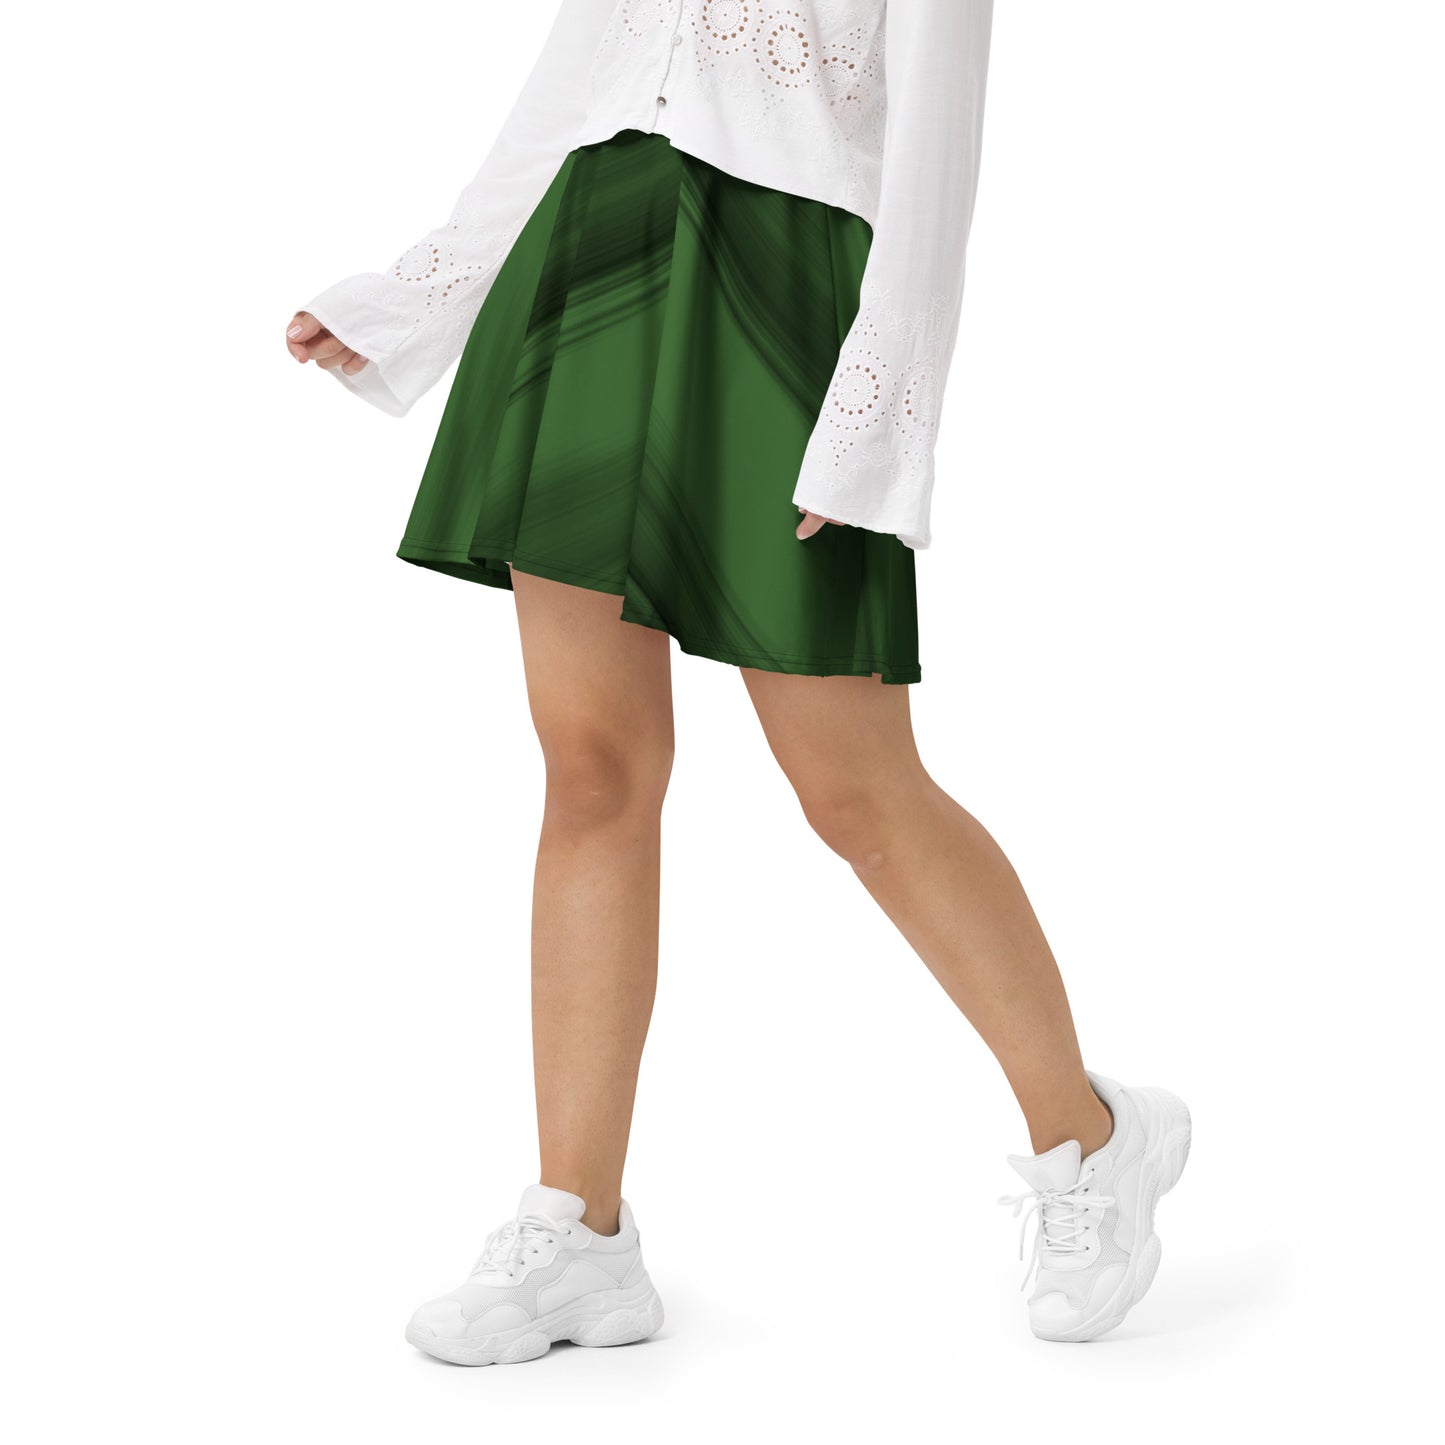 Exotic Green-Flare Skirt